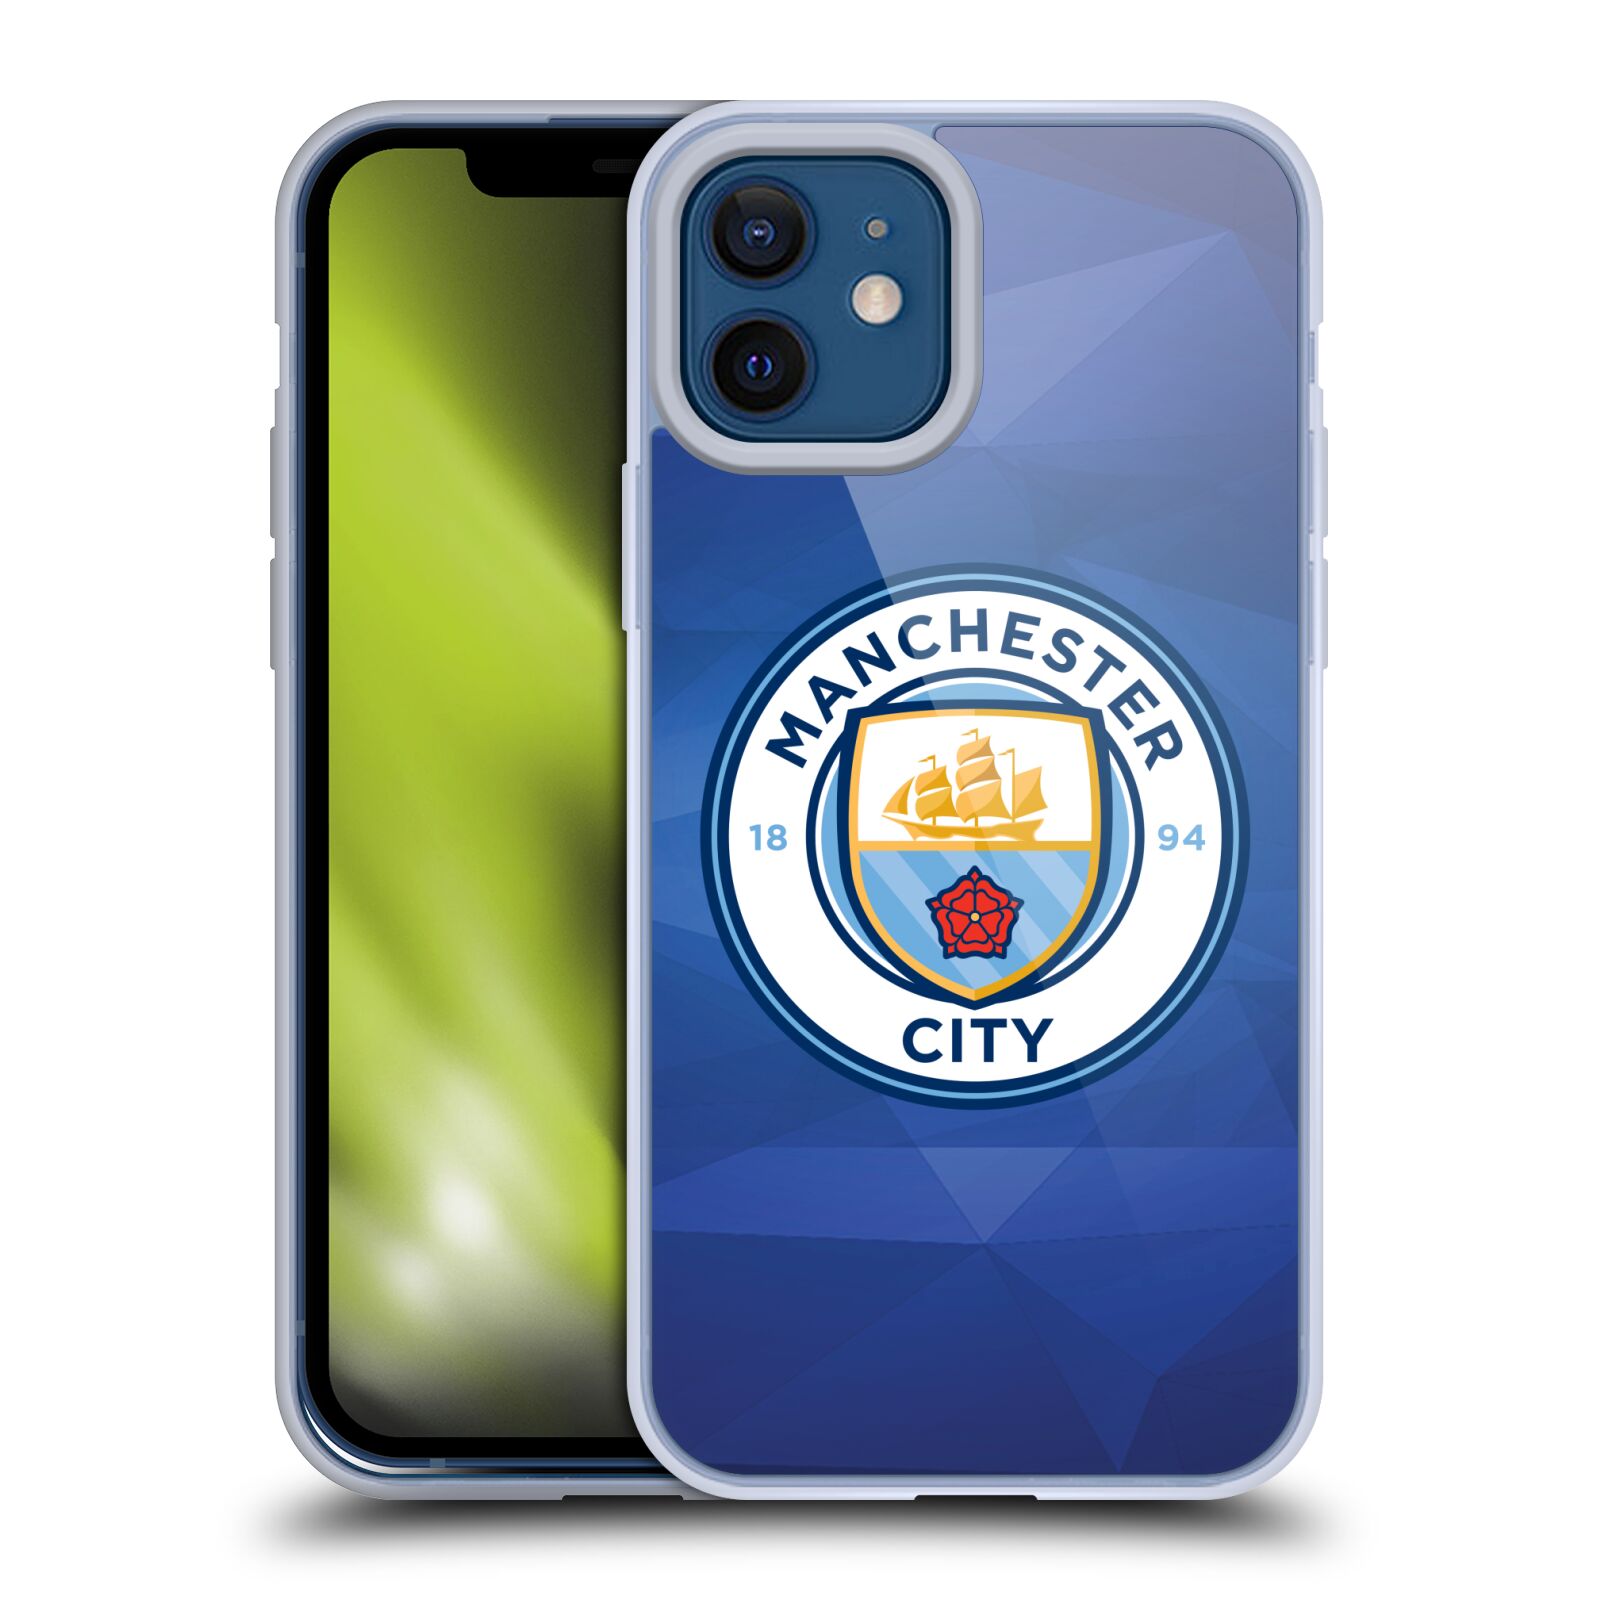 Silikonové pouzdro na mobil Apple iPhone 12 / 12 Pro - Head Case - Manchester City FC - Modré nové logo (Silikonový kryt, obal, pouzdro na mobilní telefon Apple iPhone 12 / Apple iPhone 12 Pro (6,1") s motivem Manchester City FC - Modré nové logo)